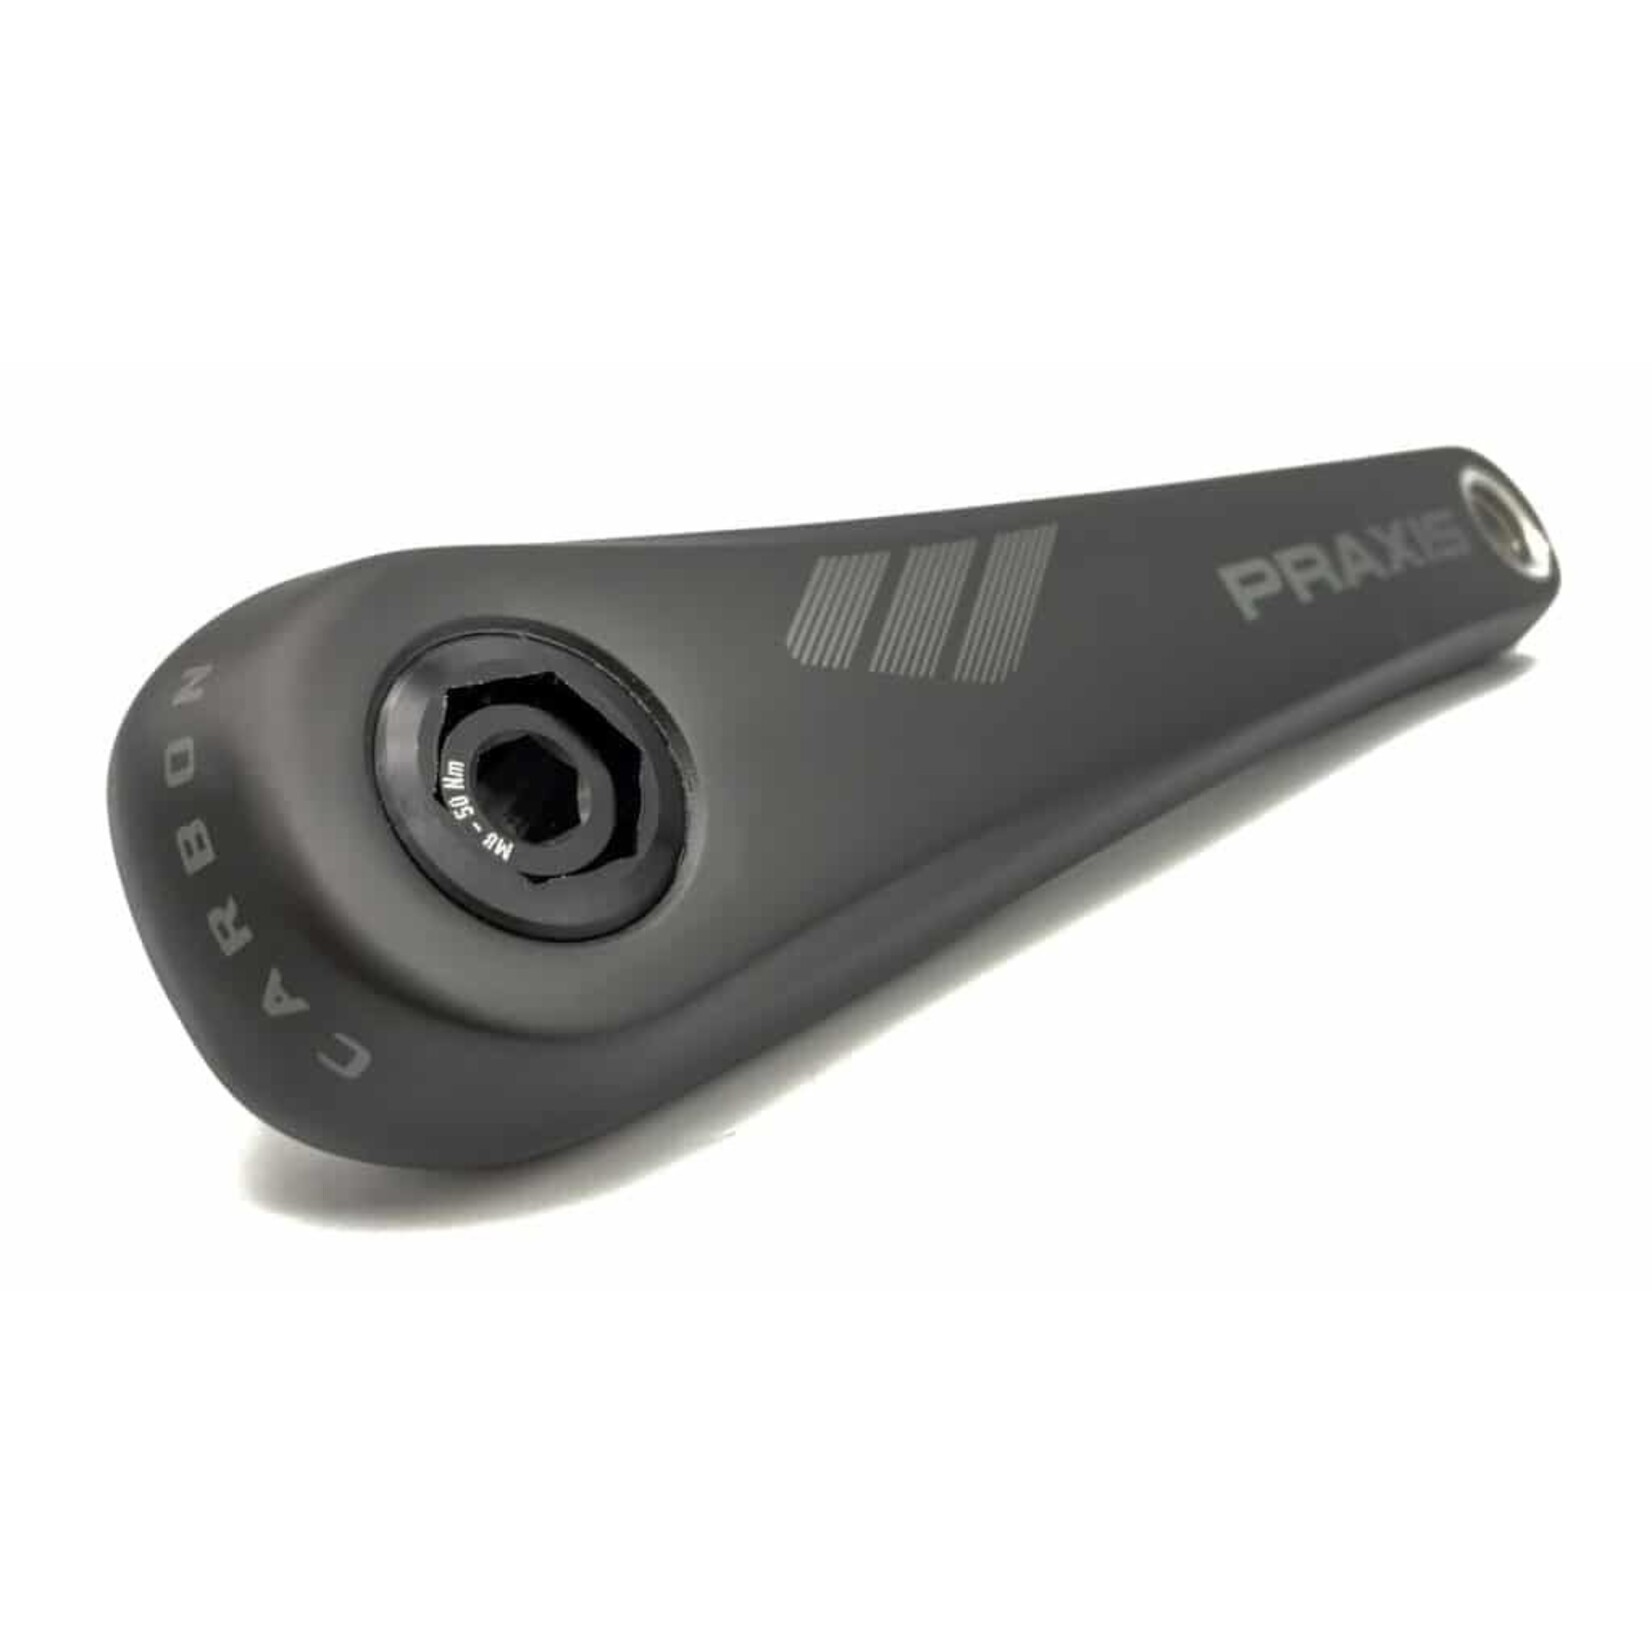 Praxis Praxis e-Bike cranks - Fazua/Brose - Carbon